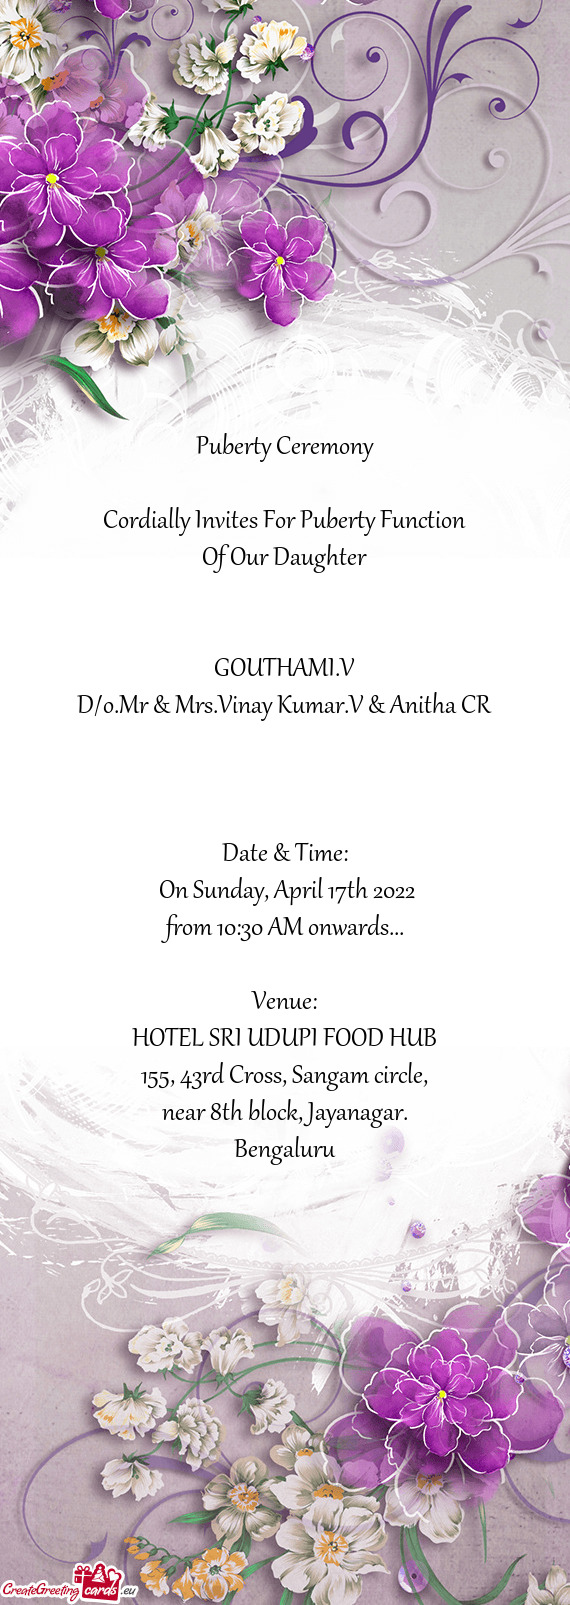 D/o.Mr & Mrs.Vinay Kumar.V & Anitha CR